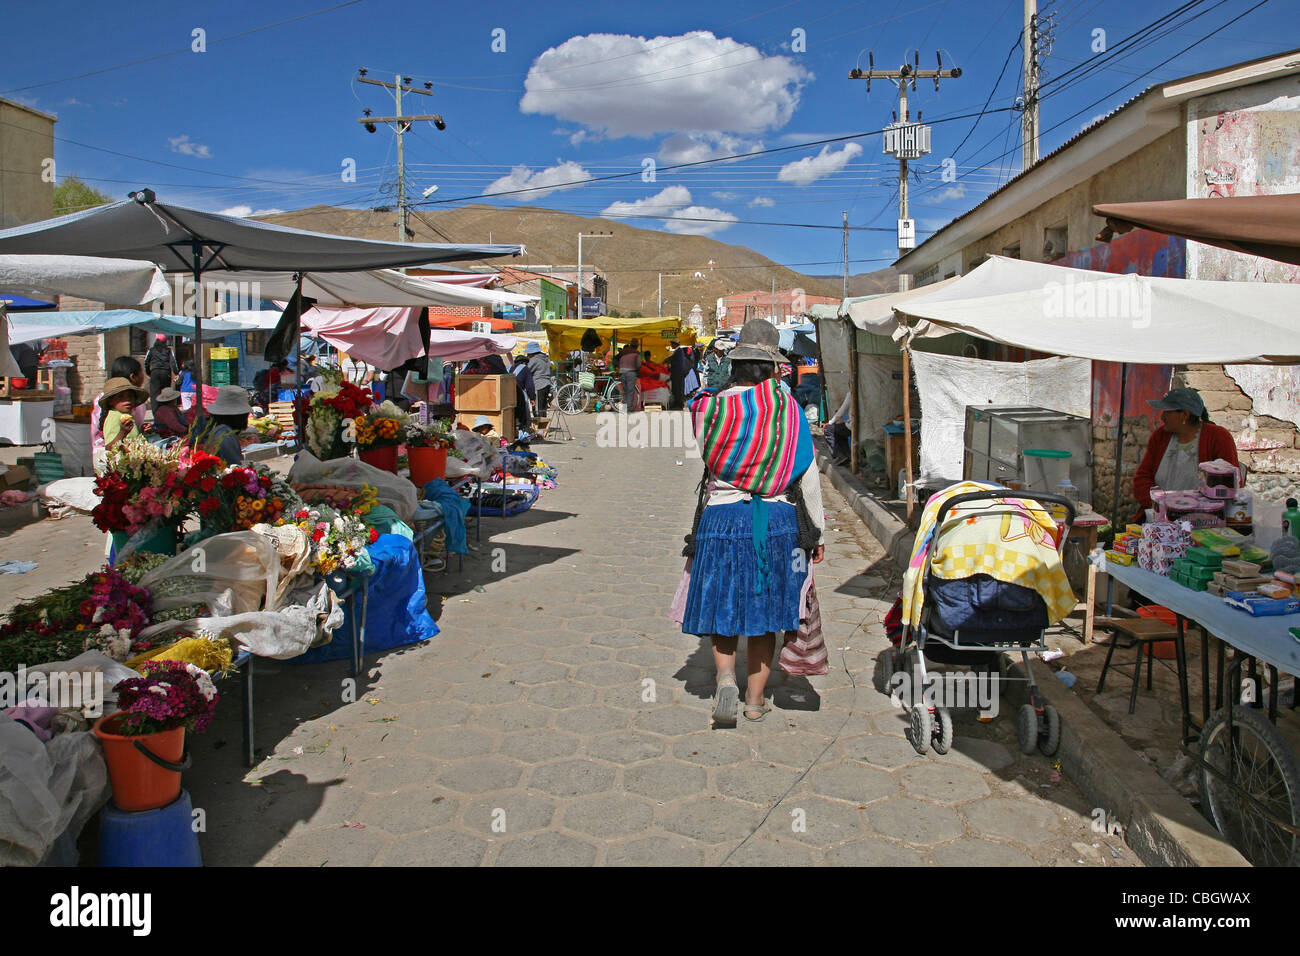 Bancarelle che vendono fiori sul mercato in Challapata, Altiplano in Bolivia Foto Stock